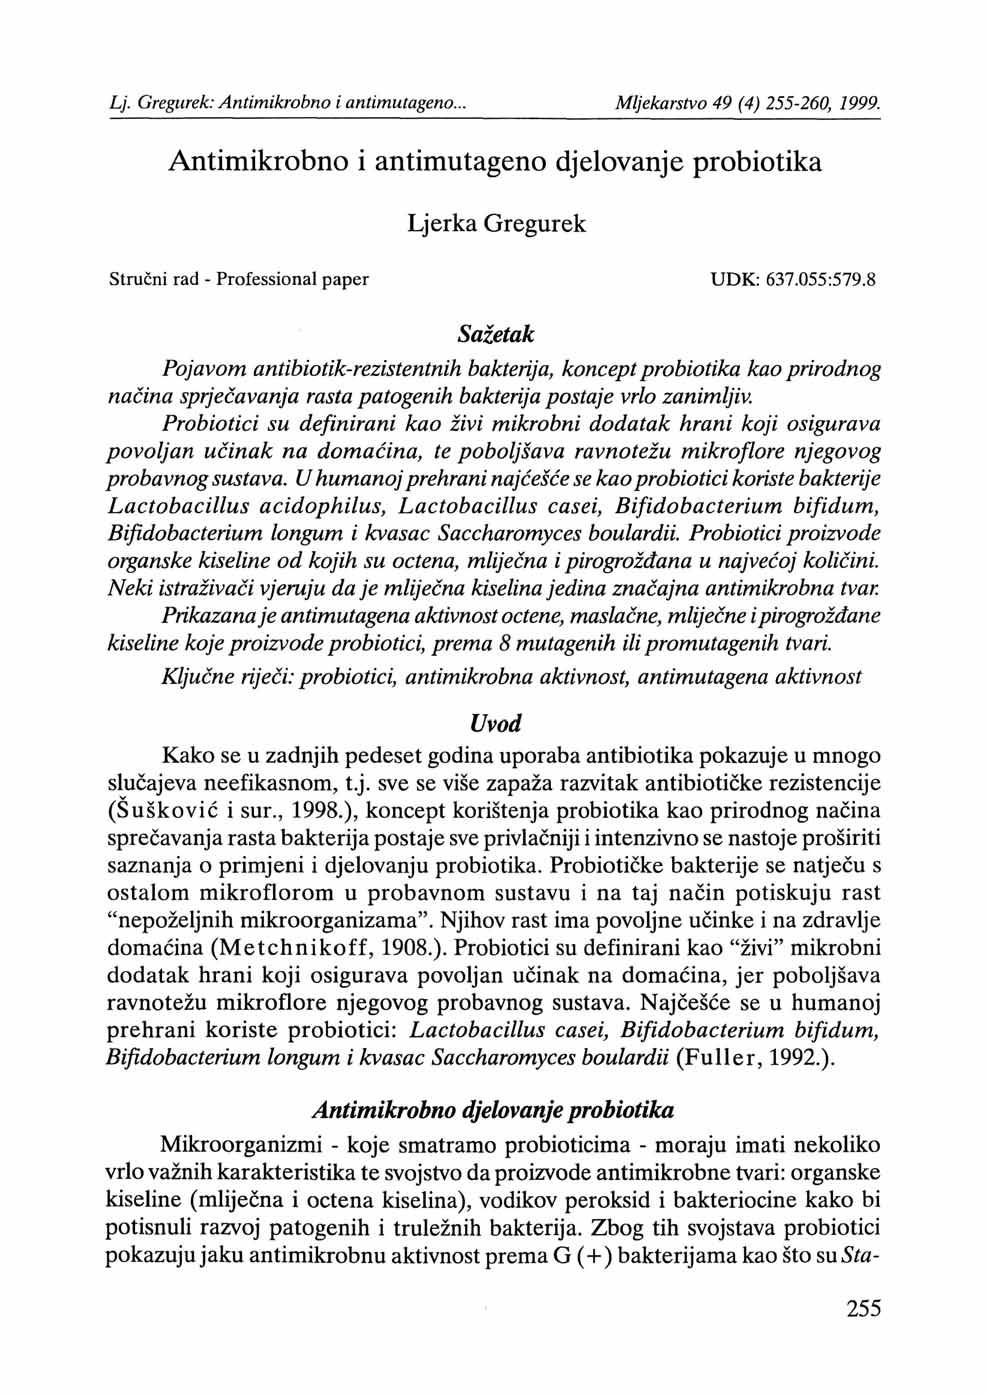 Antimikrobno i antimutageno djelovanje probiotika Ljerka Gregurek Stručni rad - Professional paper UDK: 637.055:579.